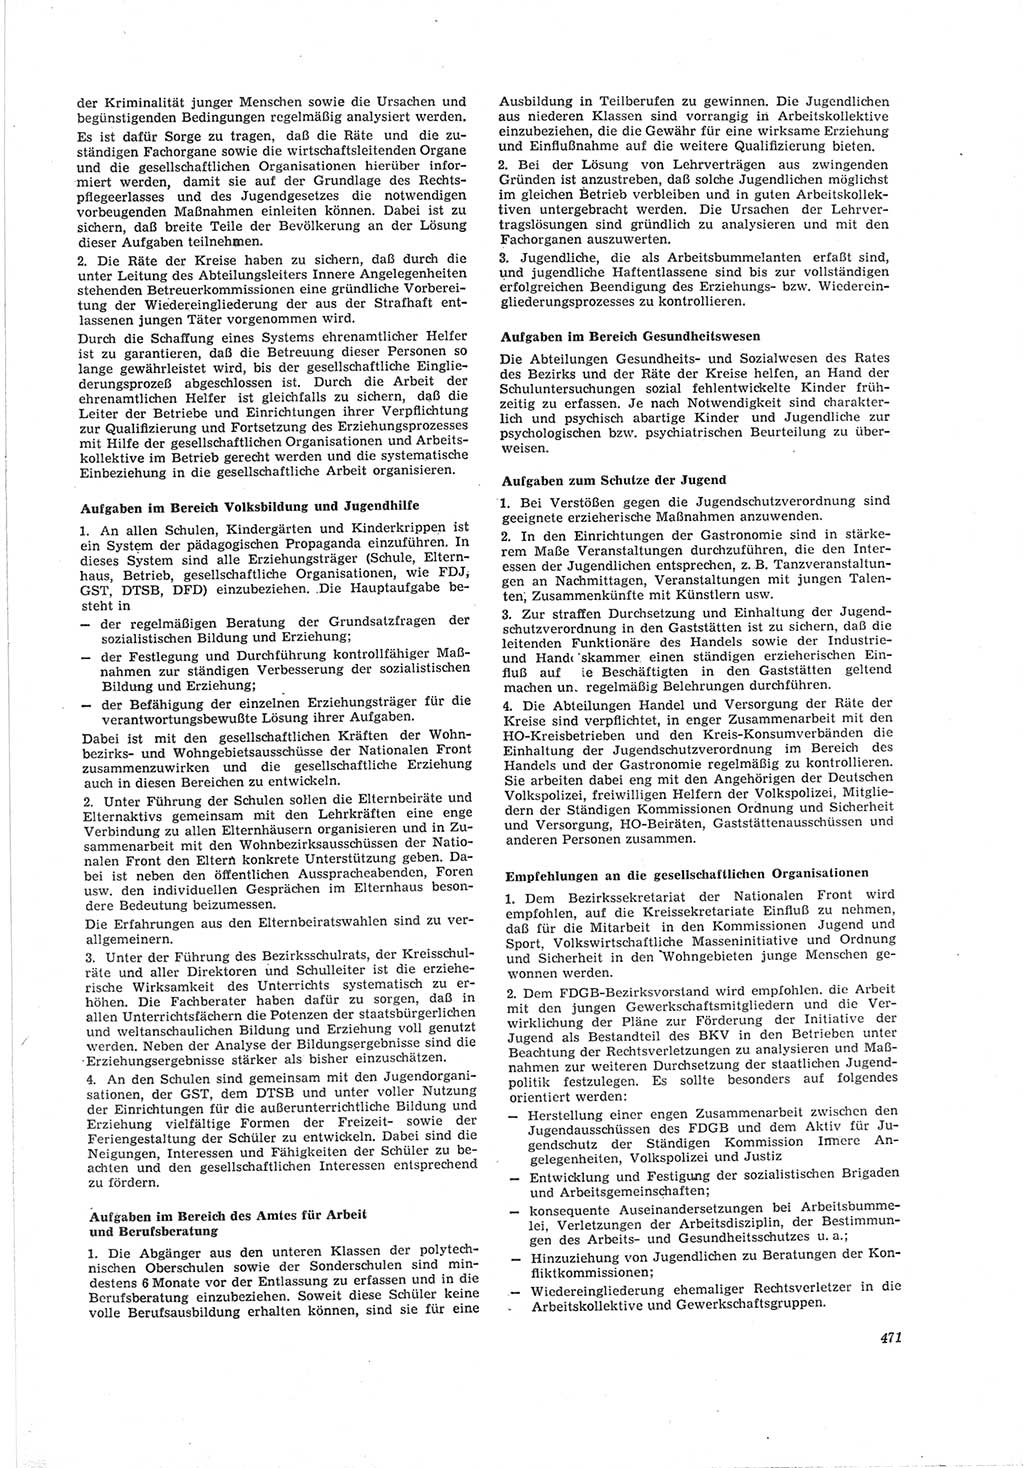 Neue Justiz (NJ), Zeitschrift für Recht und Rechtswissenschaft [Deutsche Demokratische Republik (DDR)], 19. Jahrgang 1965, Seite 471 (NJ DDR 1965, S. 471)